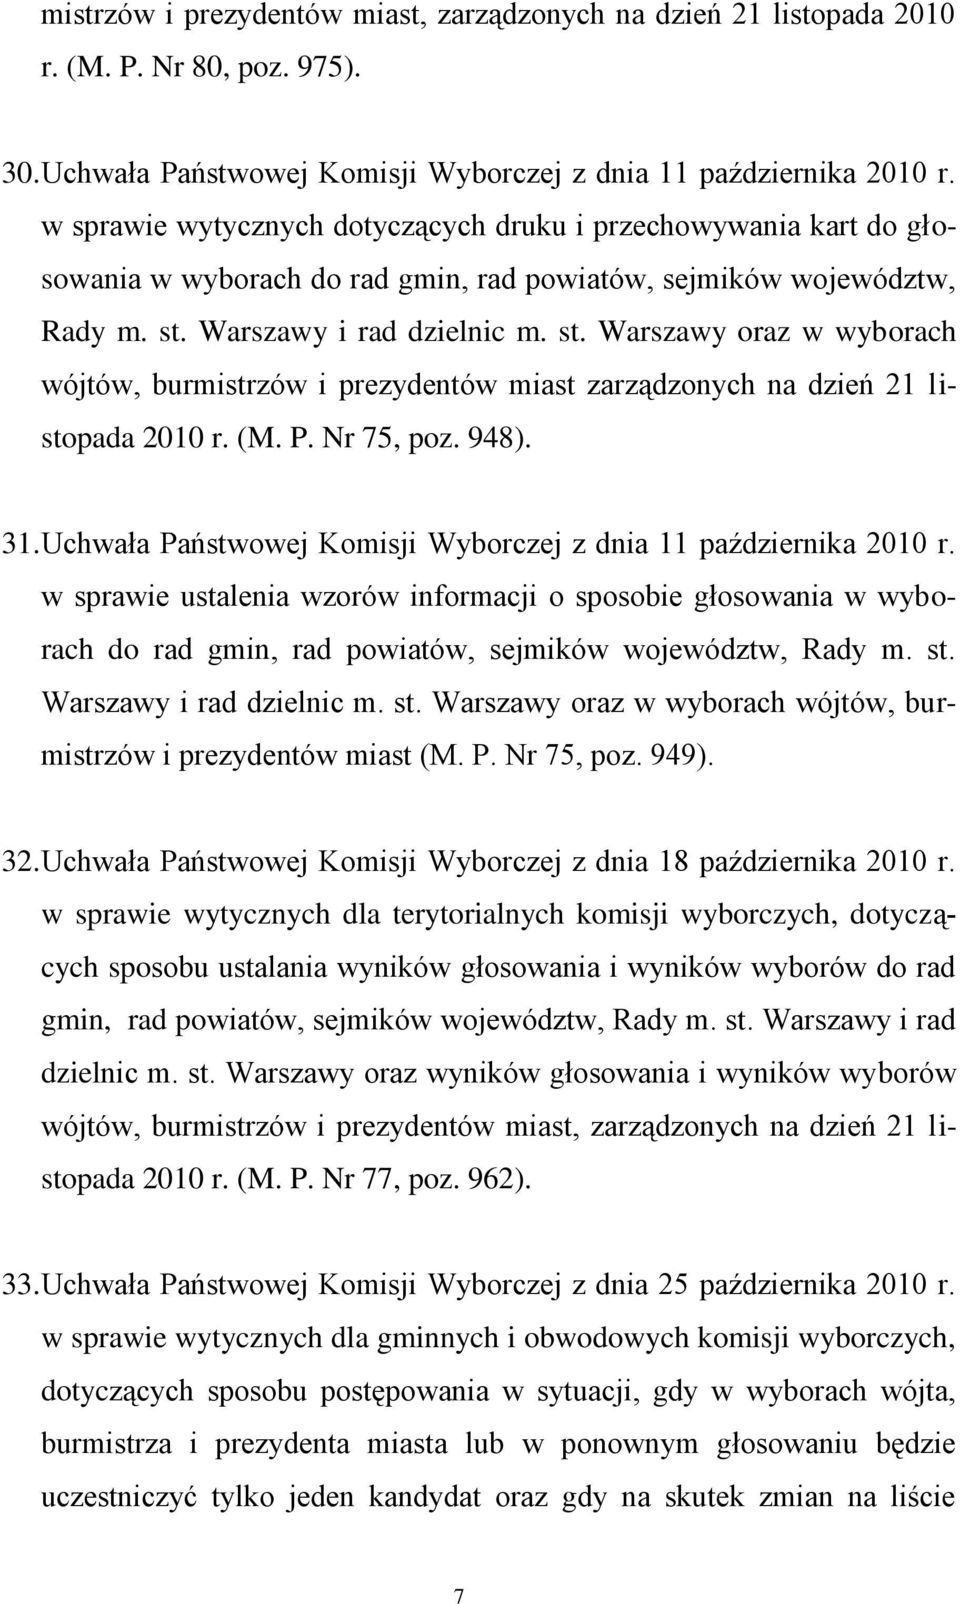 Warszawy i rad dzielnic m. st. Warszawy oraz w wyborach wójtów, burmistrzów i prezydentów miast zarządzonych na dzień 21 listopada 2010 r. (M. P. Nr 75, poz. 948). 31.